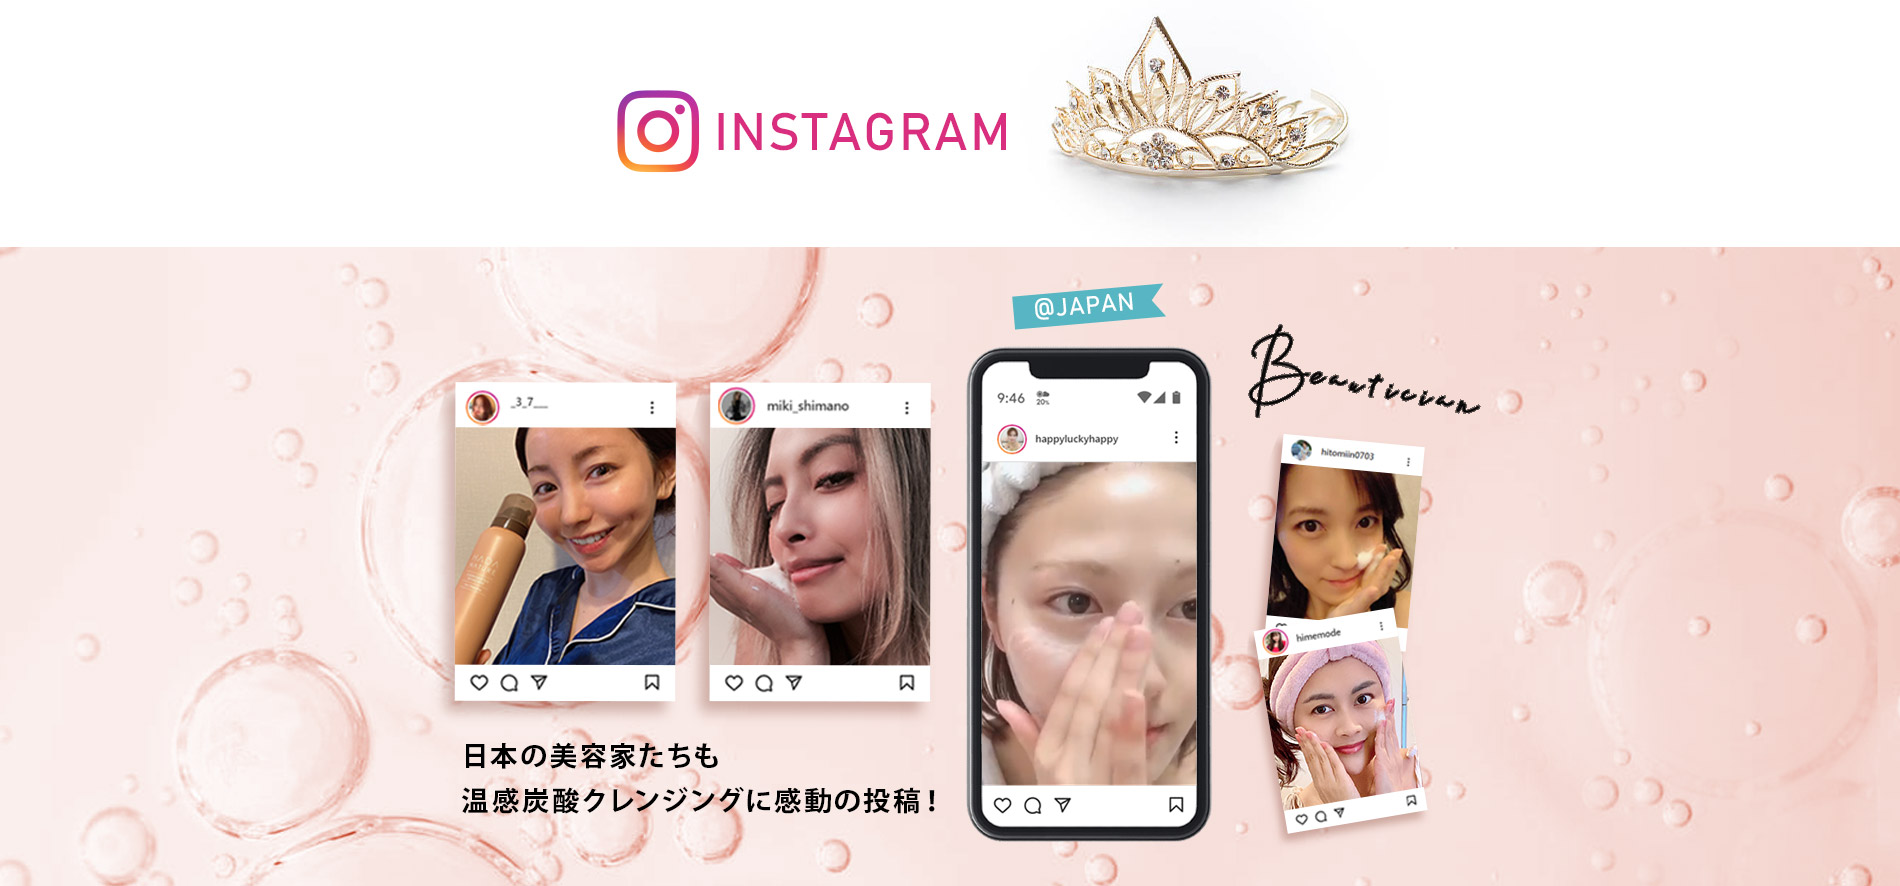 日本の美容家たちも温感炭酸クレンジングに感動の投稿